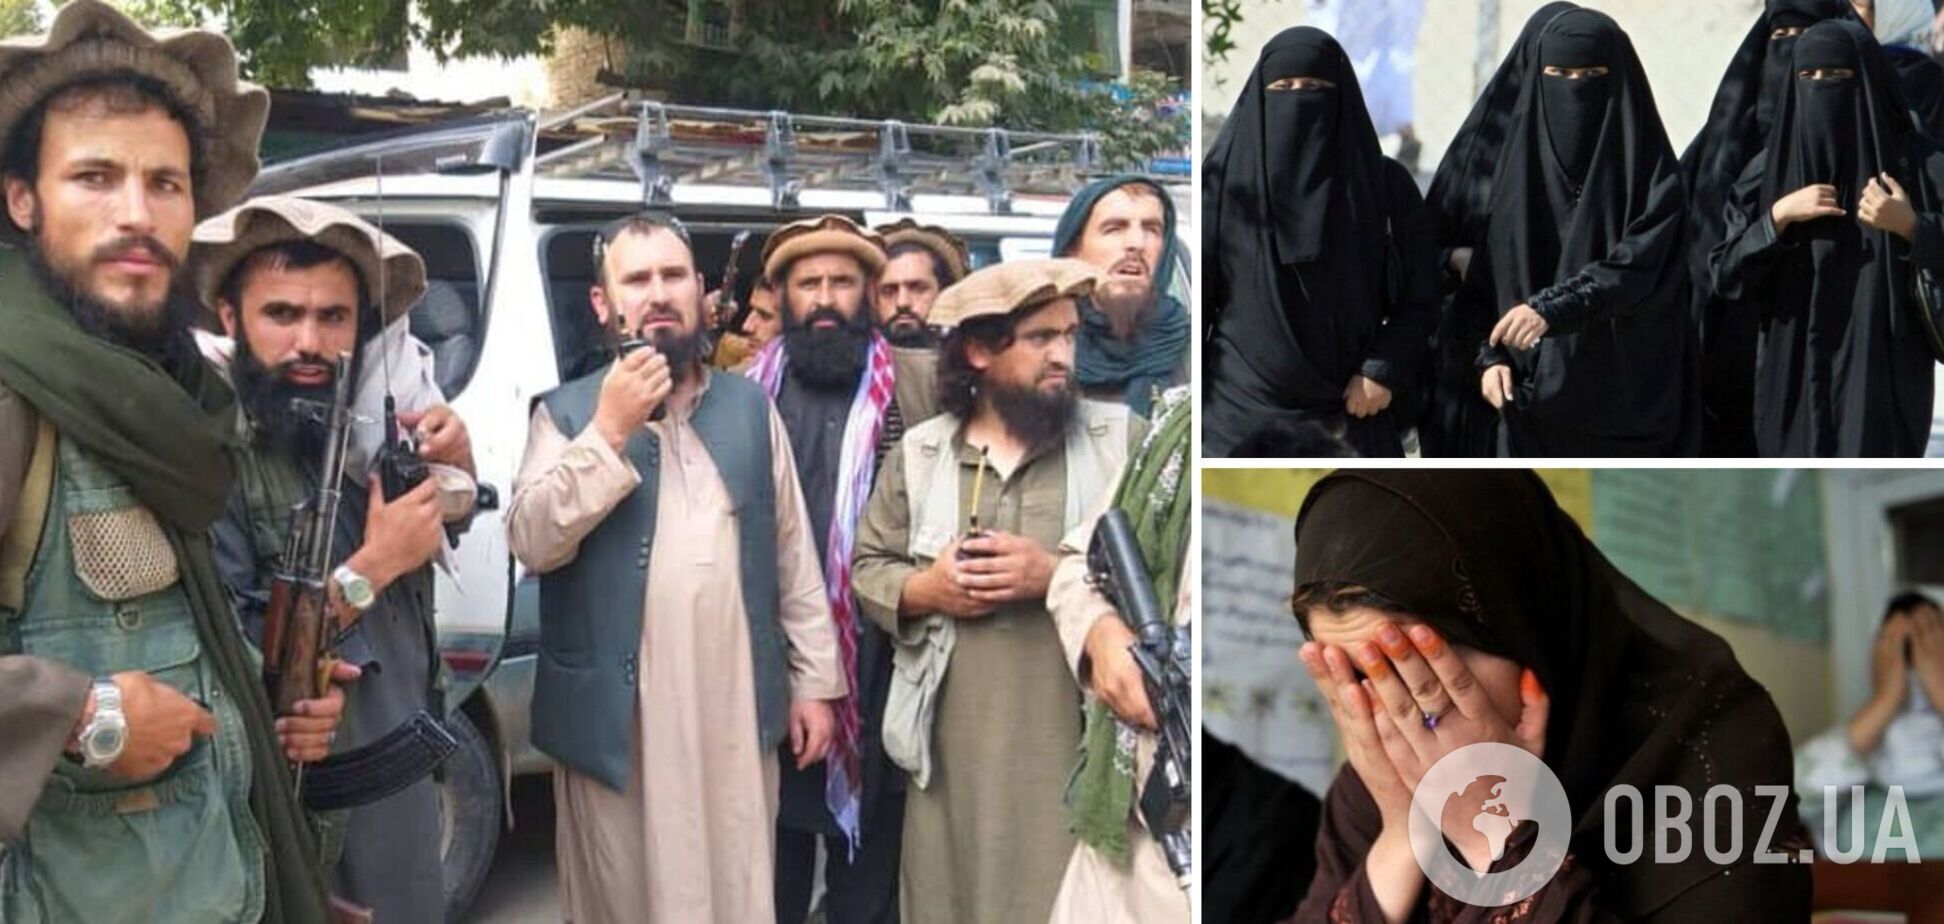 Талібан відправляє жінок, які зазнали домашнього насильства, до в'язниці 'для їхнього ж захисту' – ООН